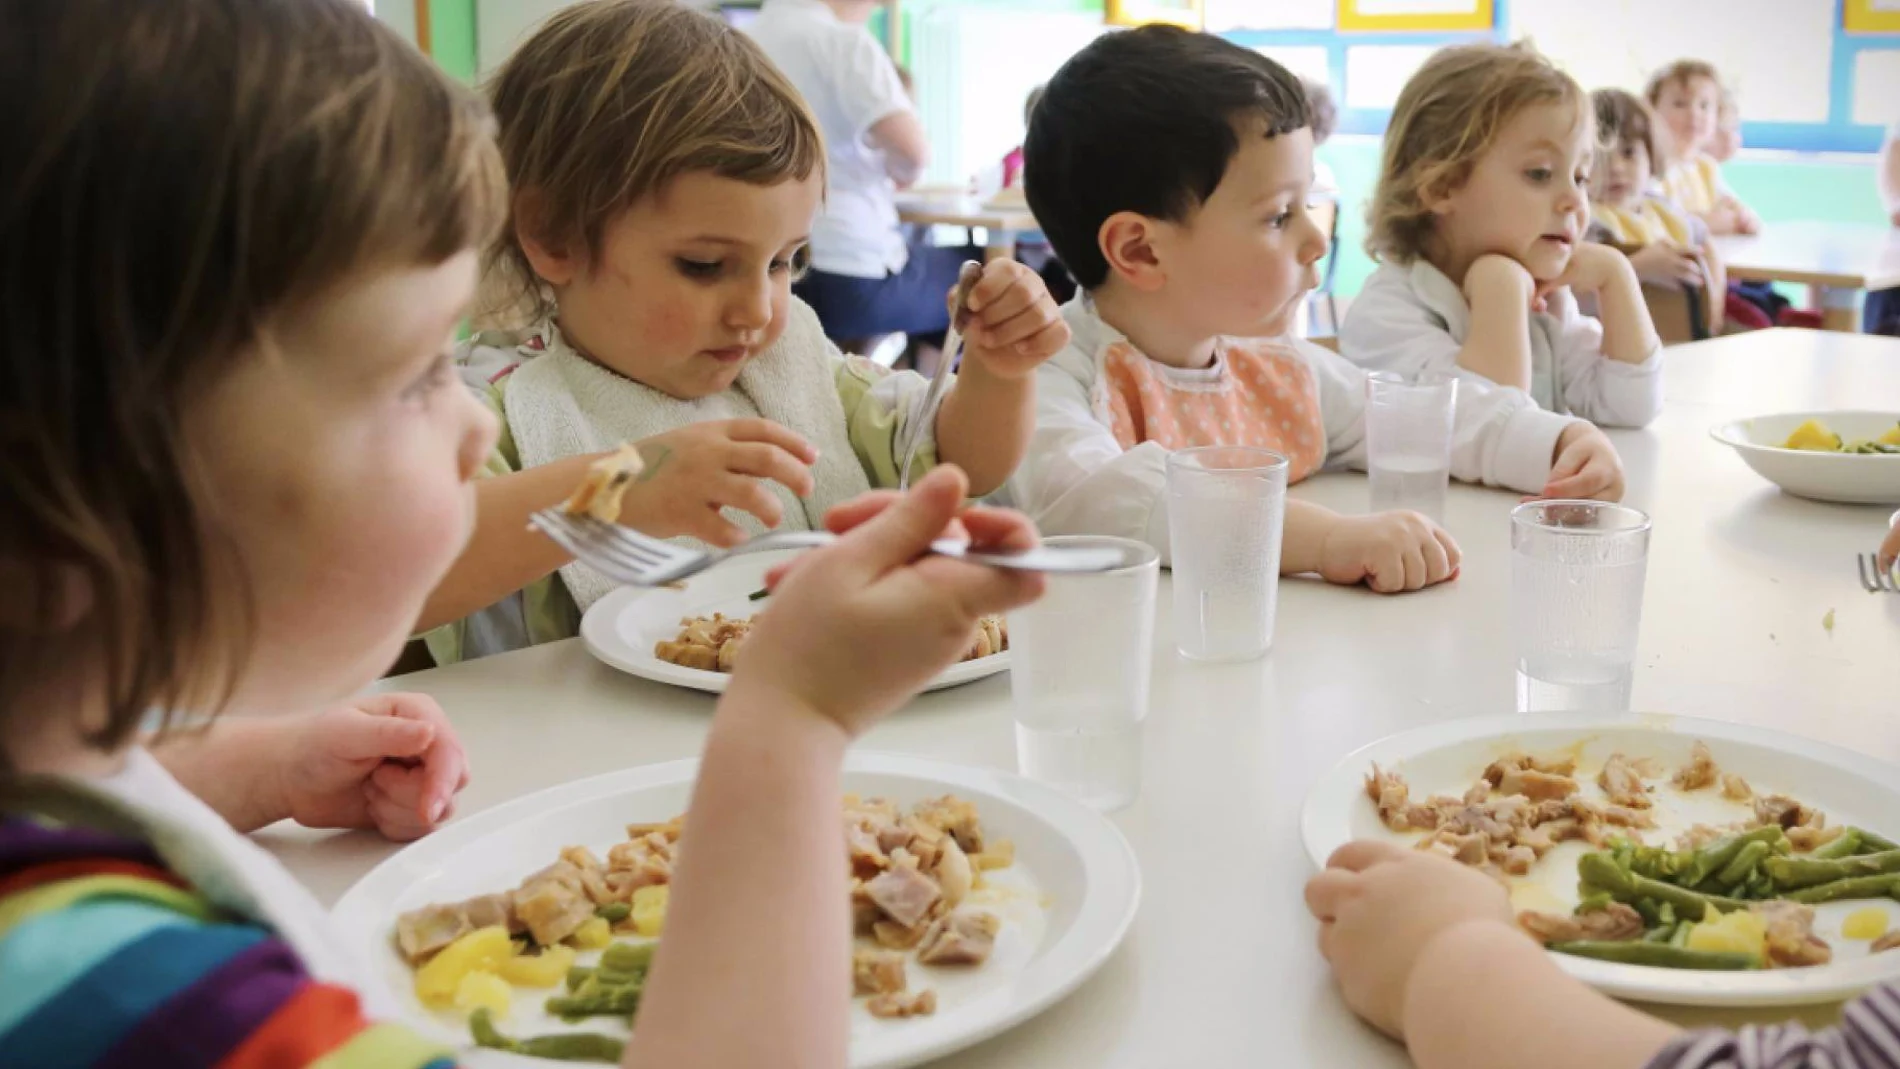 Madrid lanza una campaña para fomentar hábitos de alimentación y actividad física a más de 56.000 alumnos de Infantil